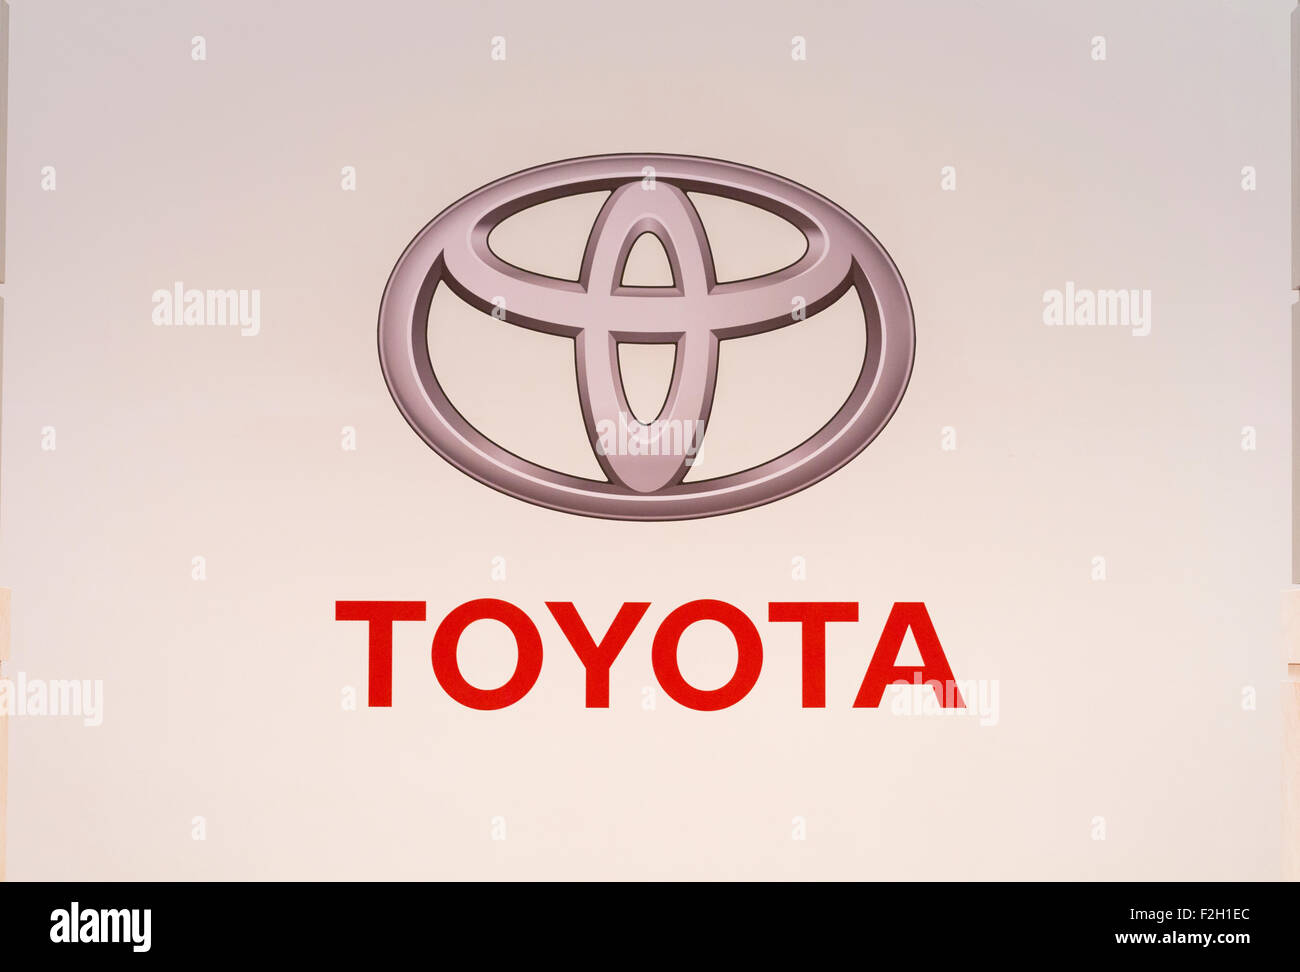 Toyota logo Stock Photo